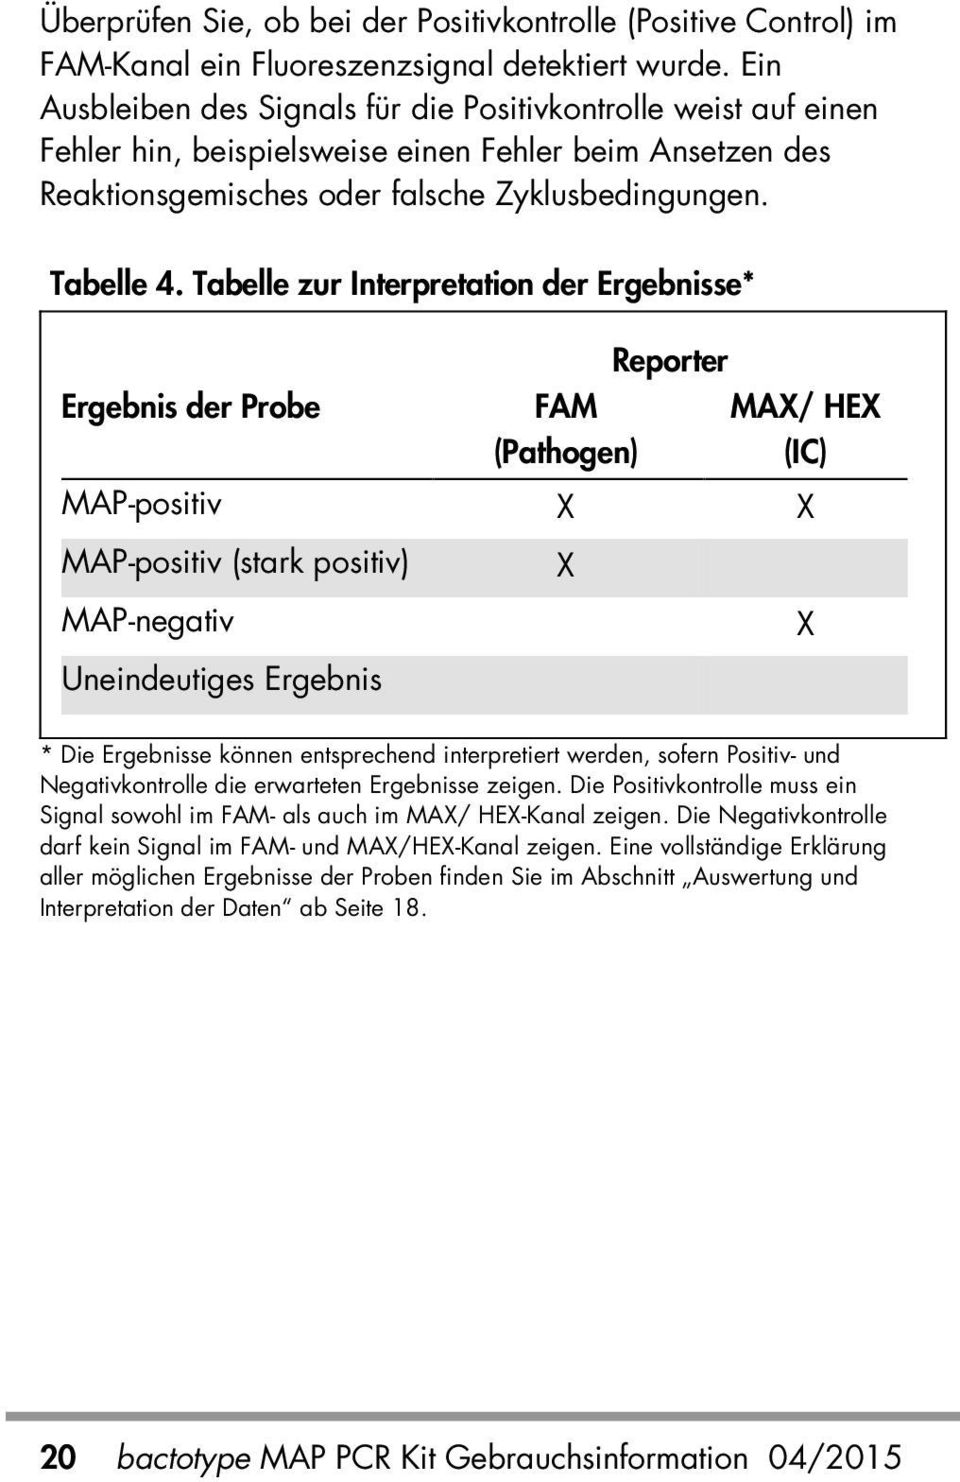 Tabelle zur Interpretation der Ergebnisse* Ergebnis der Probe FAM (Pathogen) Reporter MAX/ HEX (IC) MAP-positiv X X MAP-positiv (stark positiv) MAP-negativ Uneindeutiges Ergebnis X X * Die Ergebnisse